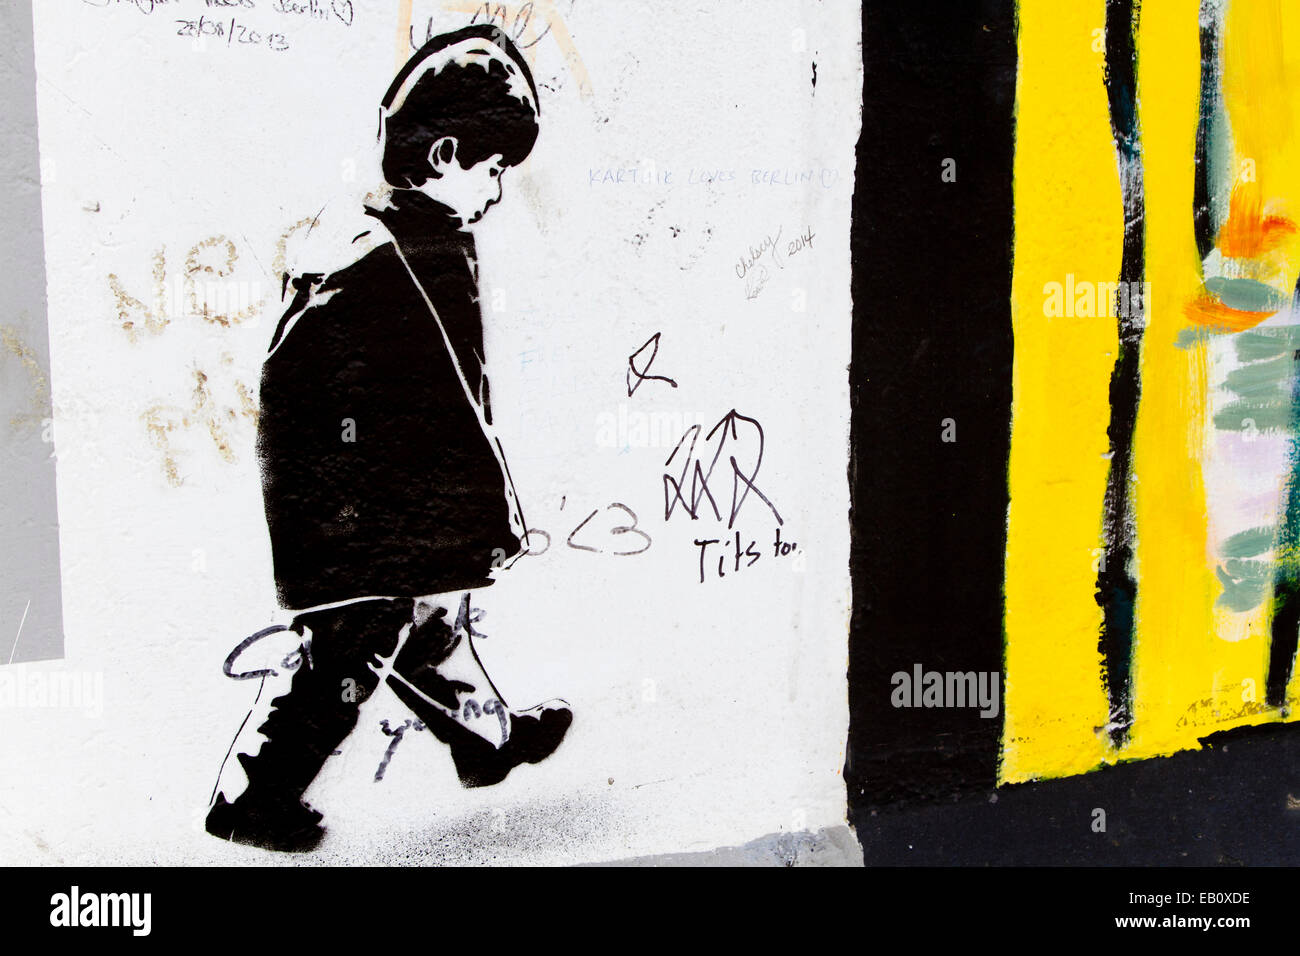 Berlin Wall Street Art Graffiti Banksy style boy Foto Stock